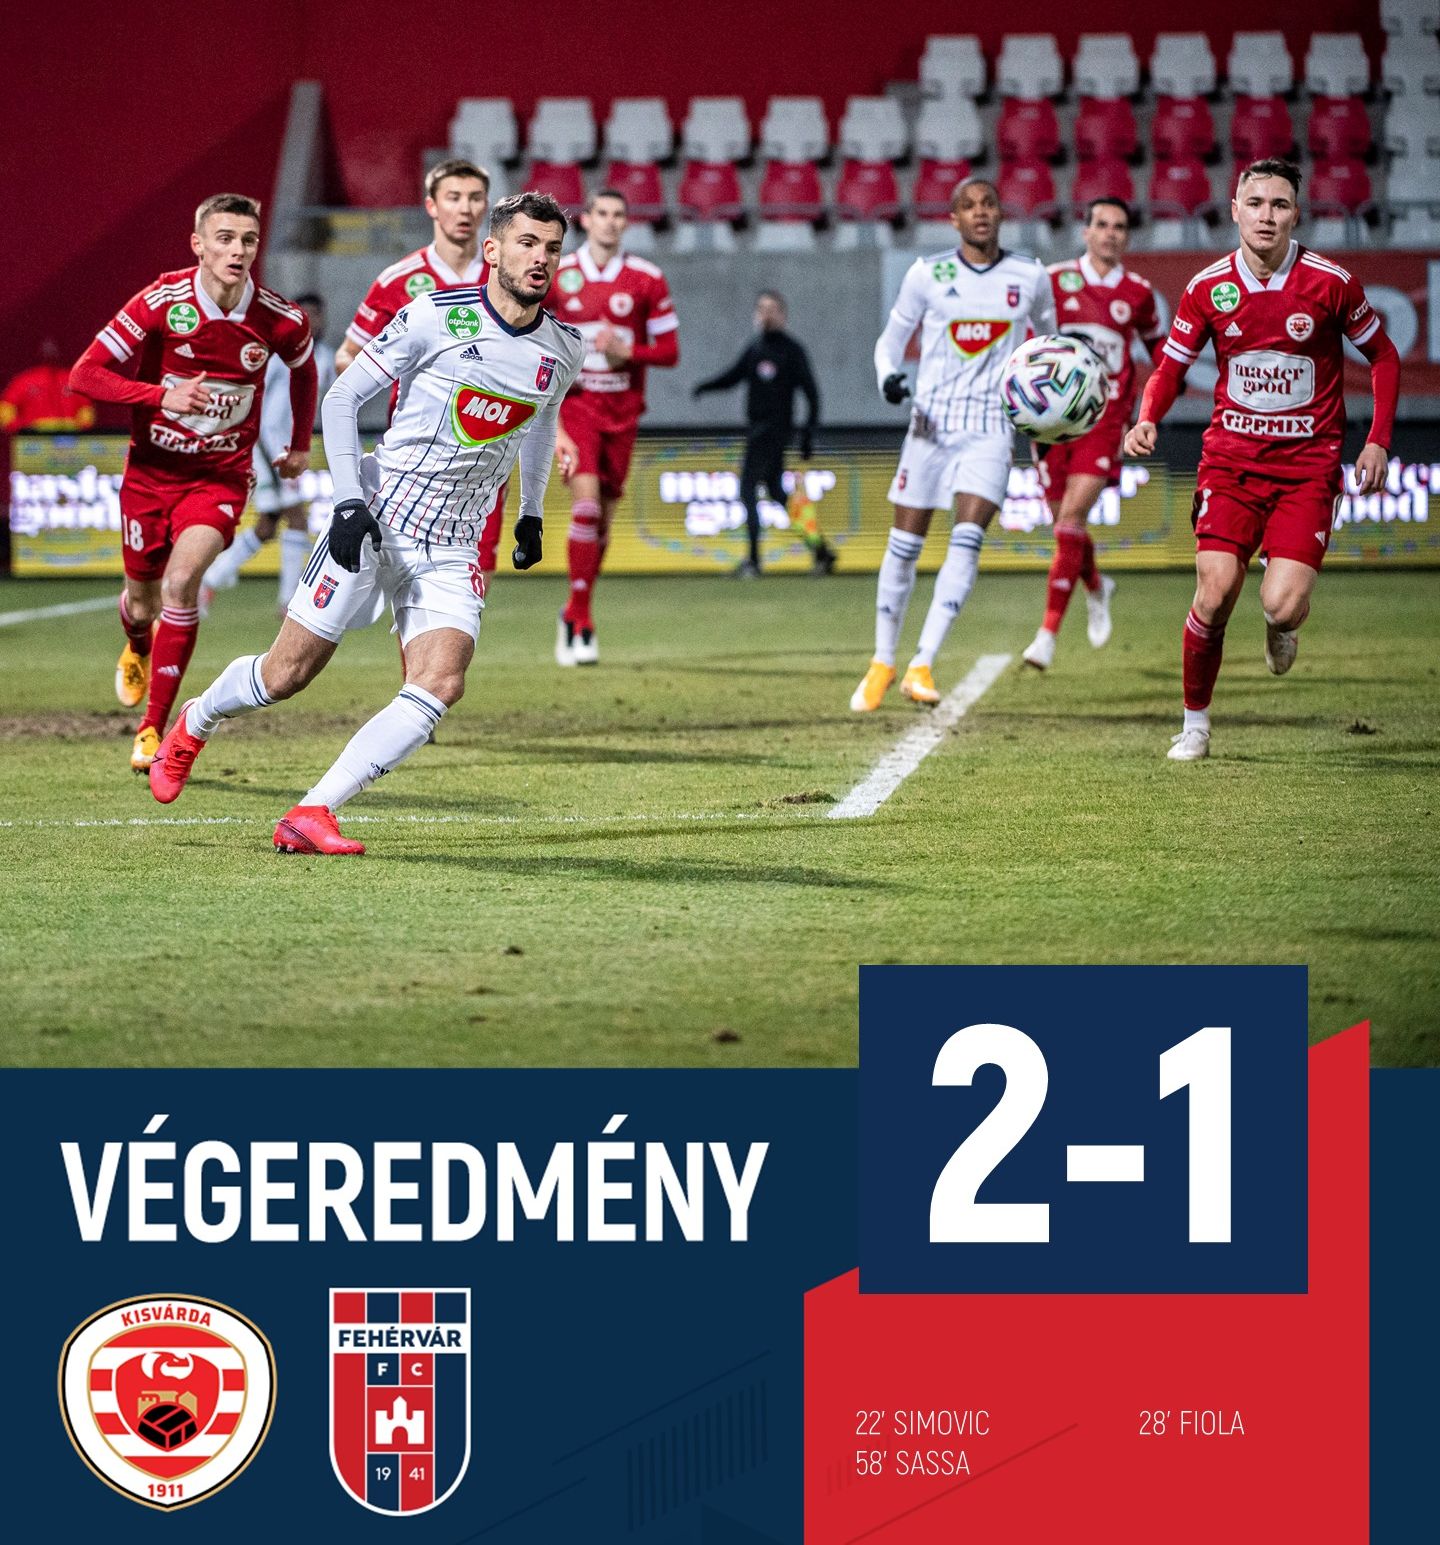 2-1-re kikapott Kisvárdán a MOL Fehérvár FC